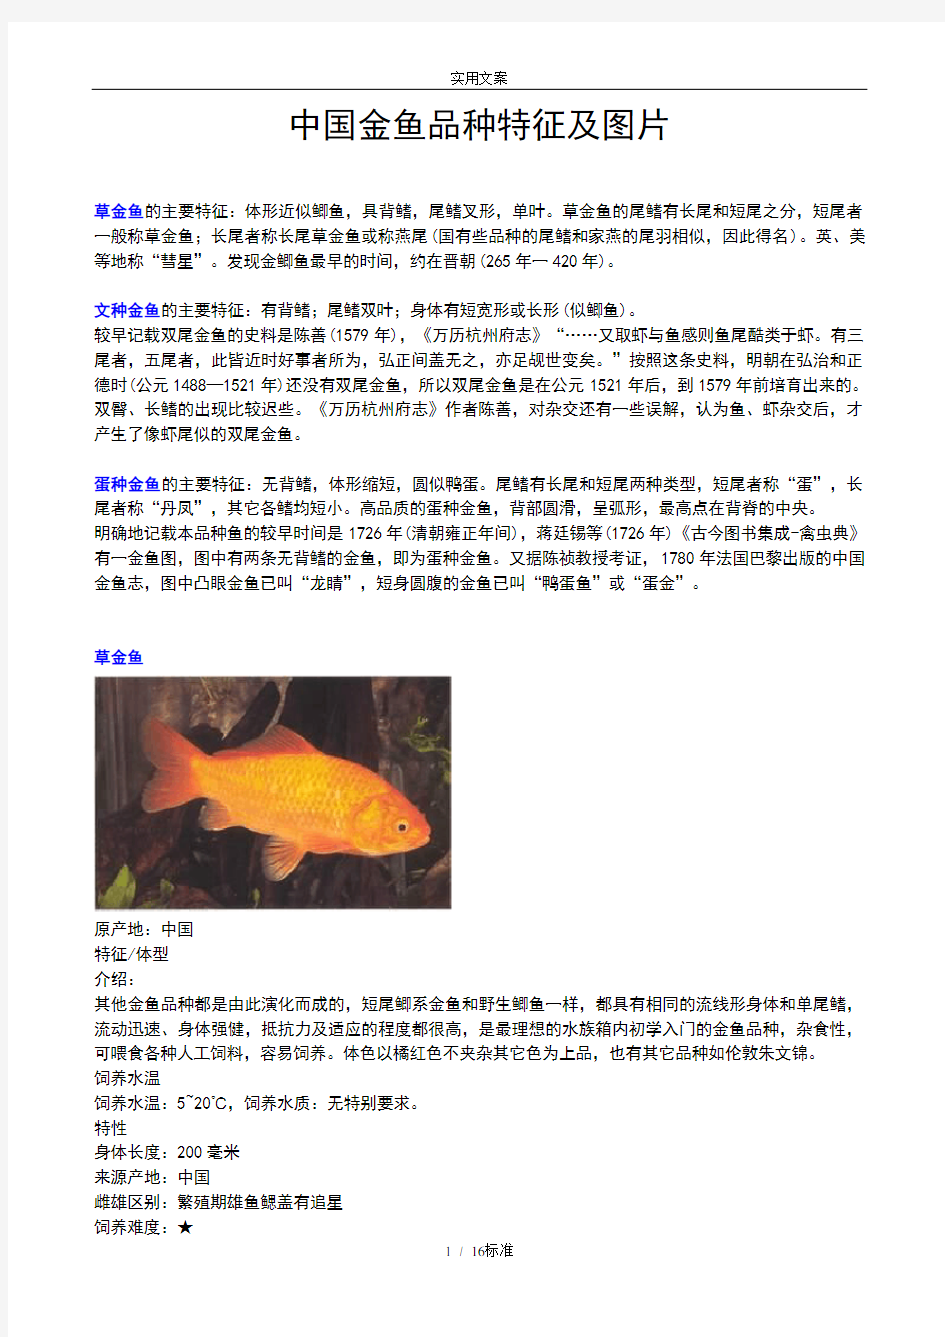 全金鱼种类及图片